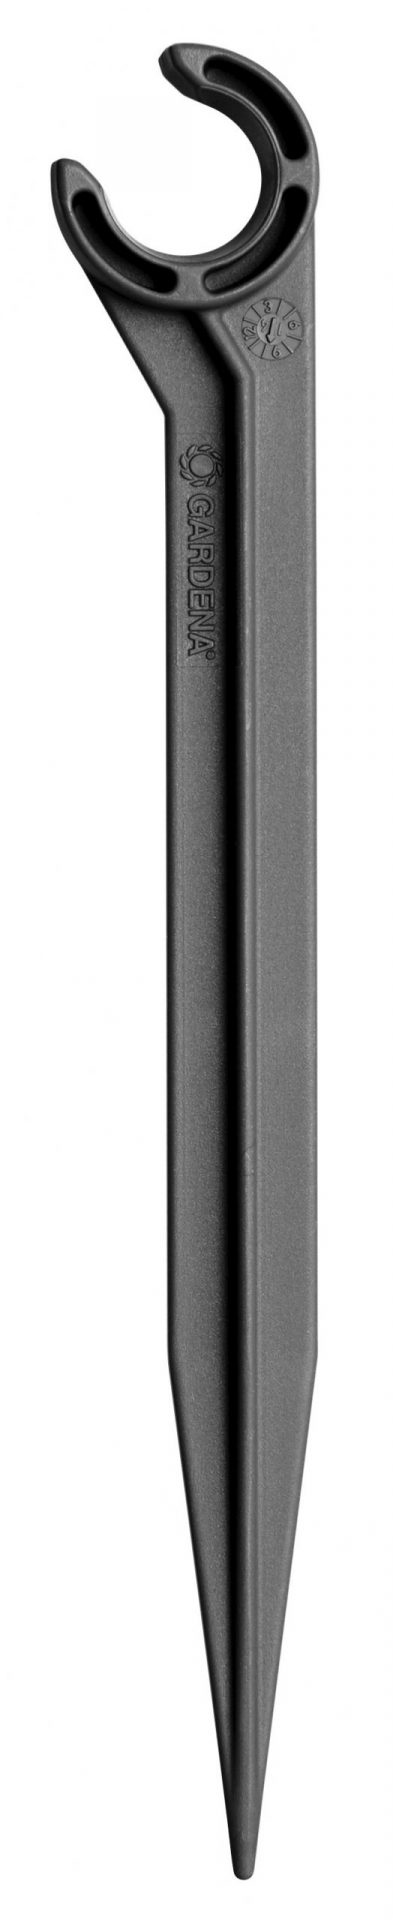 Micro Drip System supporto tubo 3/16 GARDENA 1327-20 Irrigazione GARDENA Memigavi.it